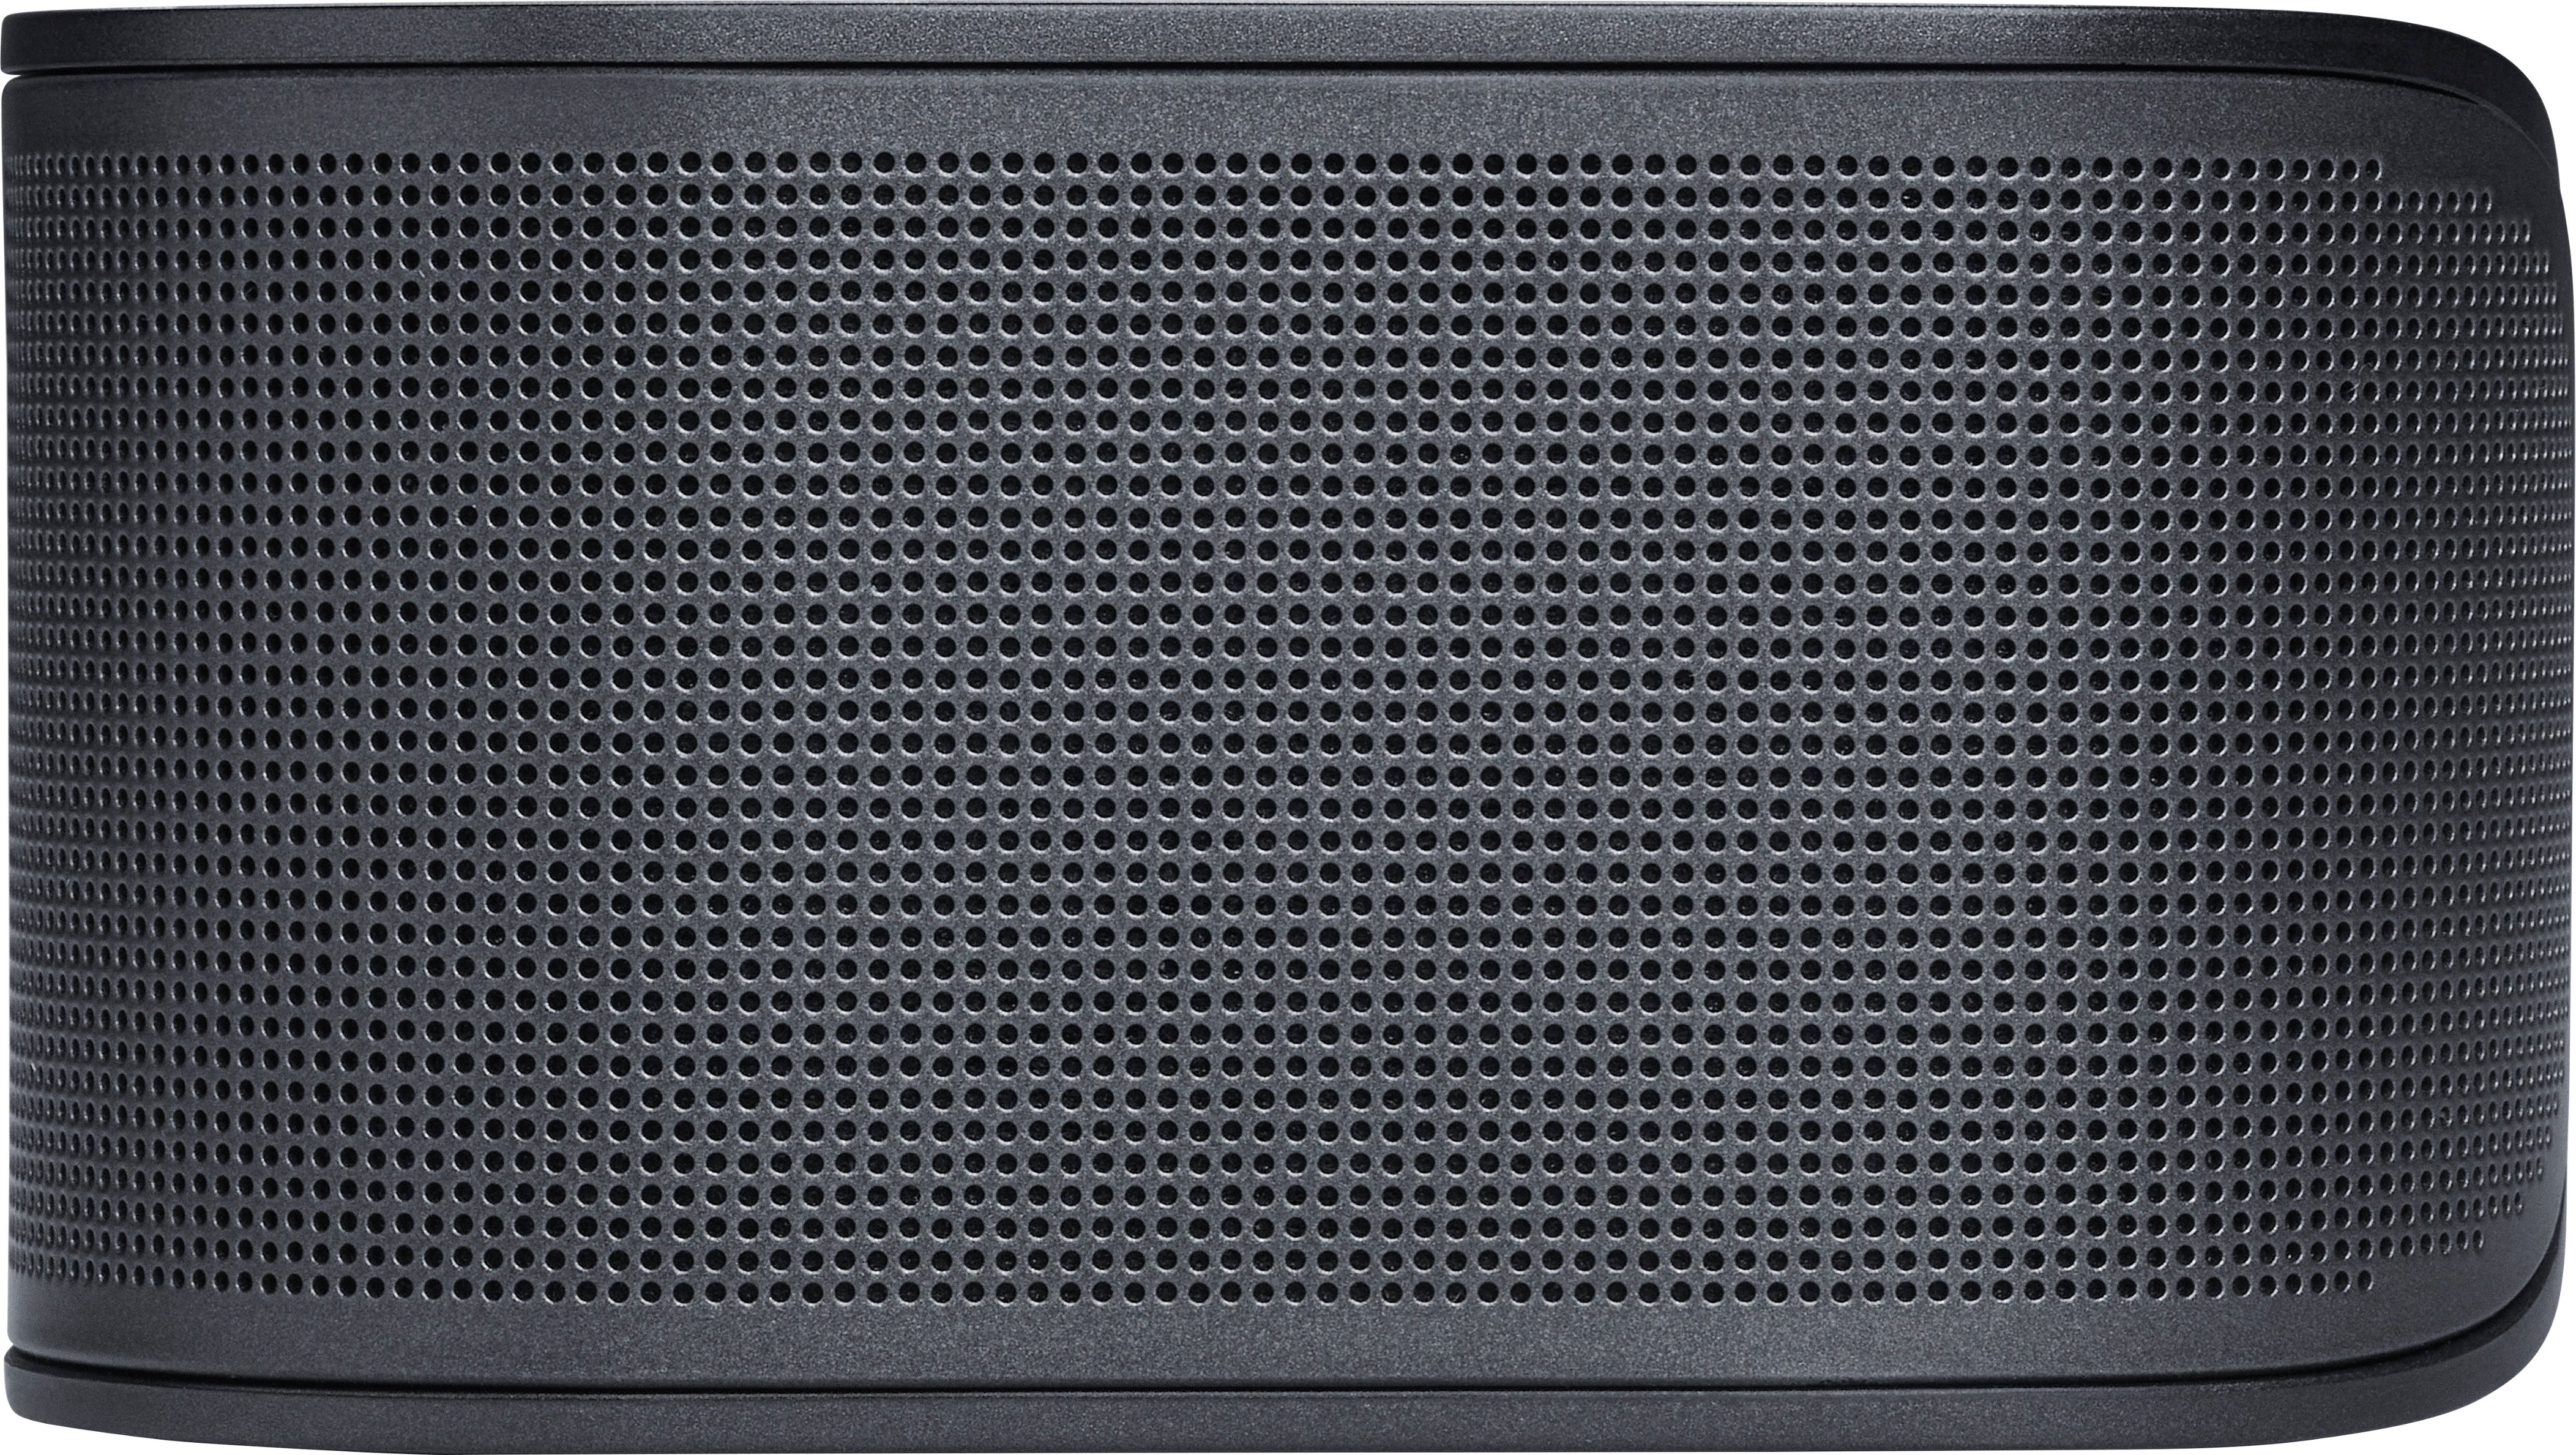 JBL BAR 500 5.1ch Soundbar Black with Atmos JBLBAR500PROBLKAM Multibeam Best Dolby and - Buy